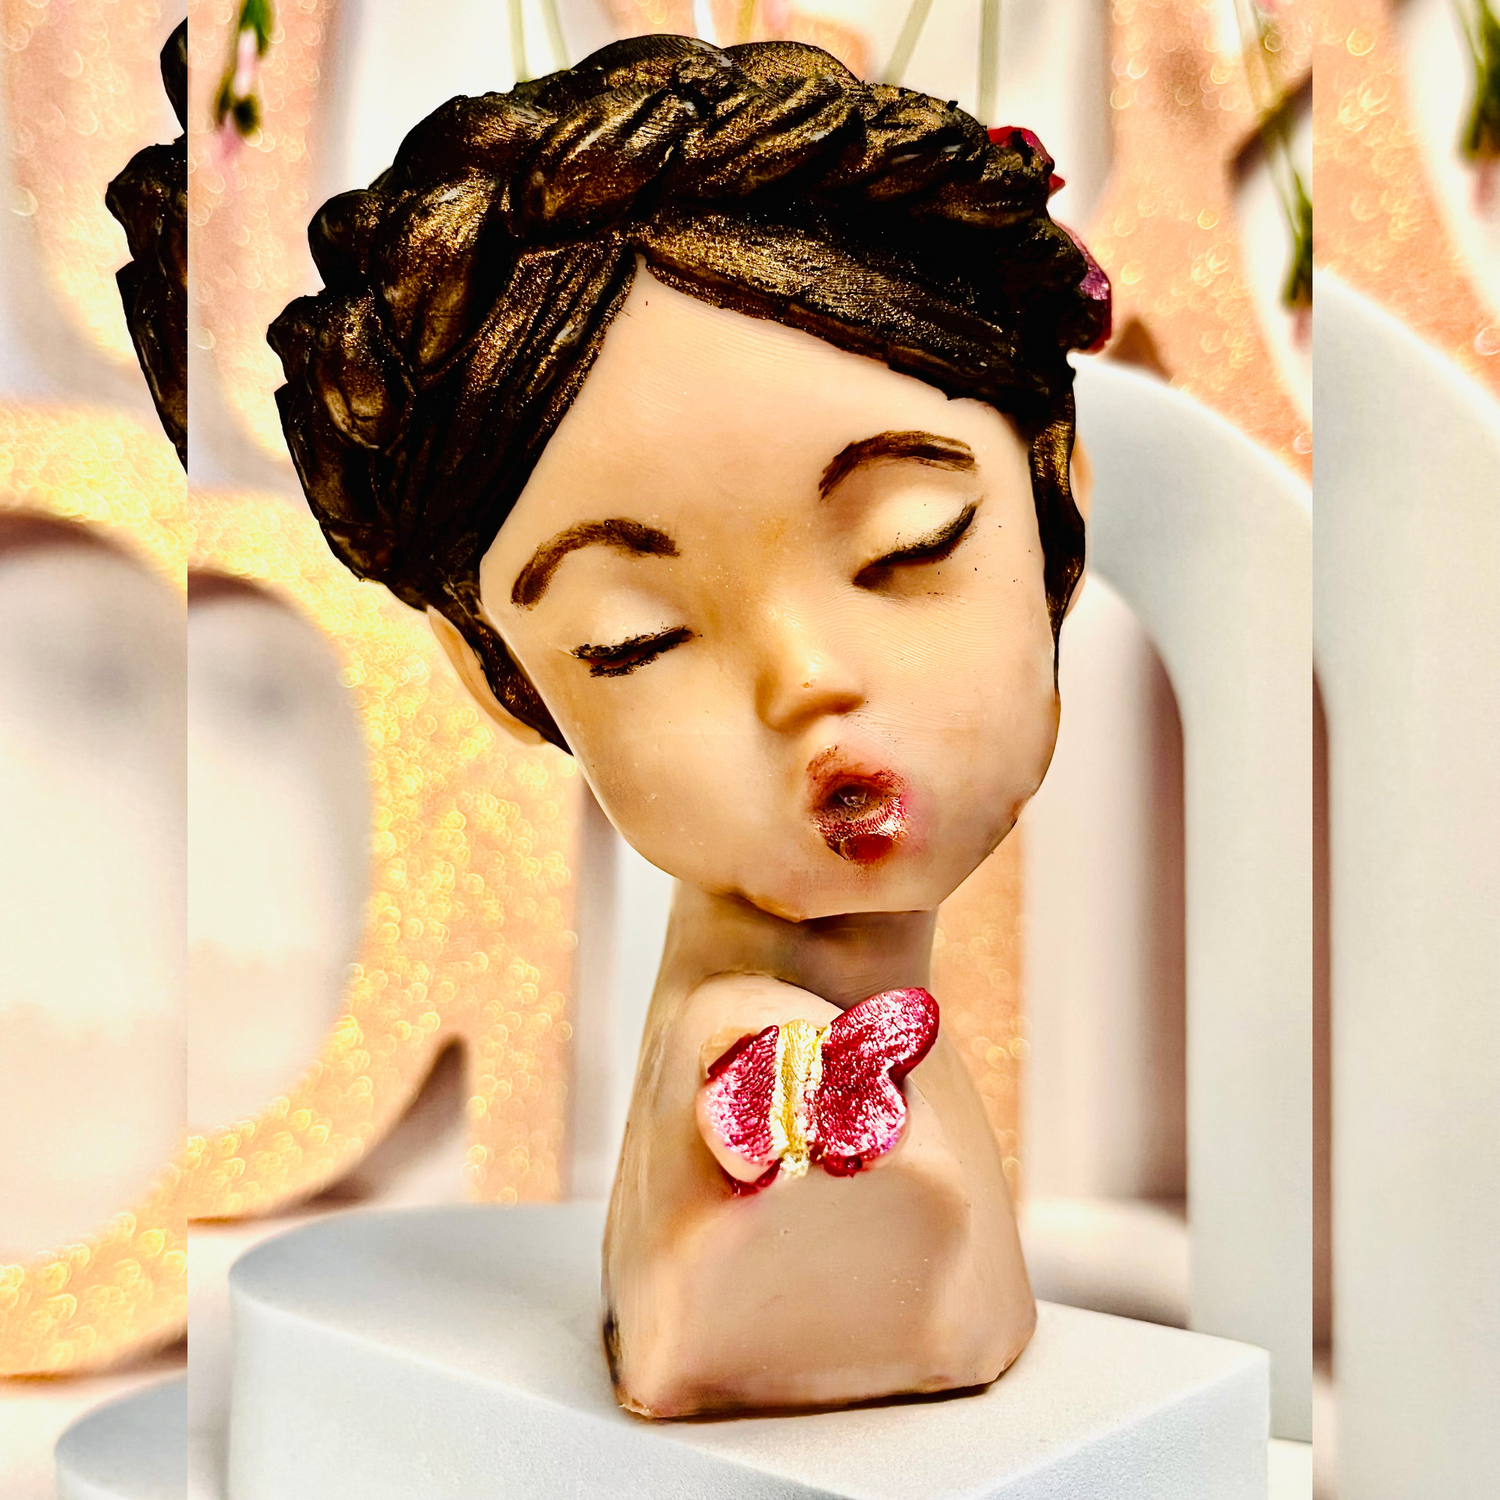 Alchemy7 | Little Princess - Sculptural Pillar Candle - Customizable Little Princess Candle - A Touch of Innocence